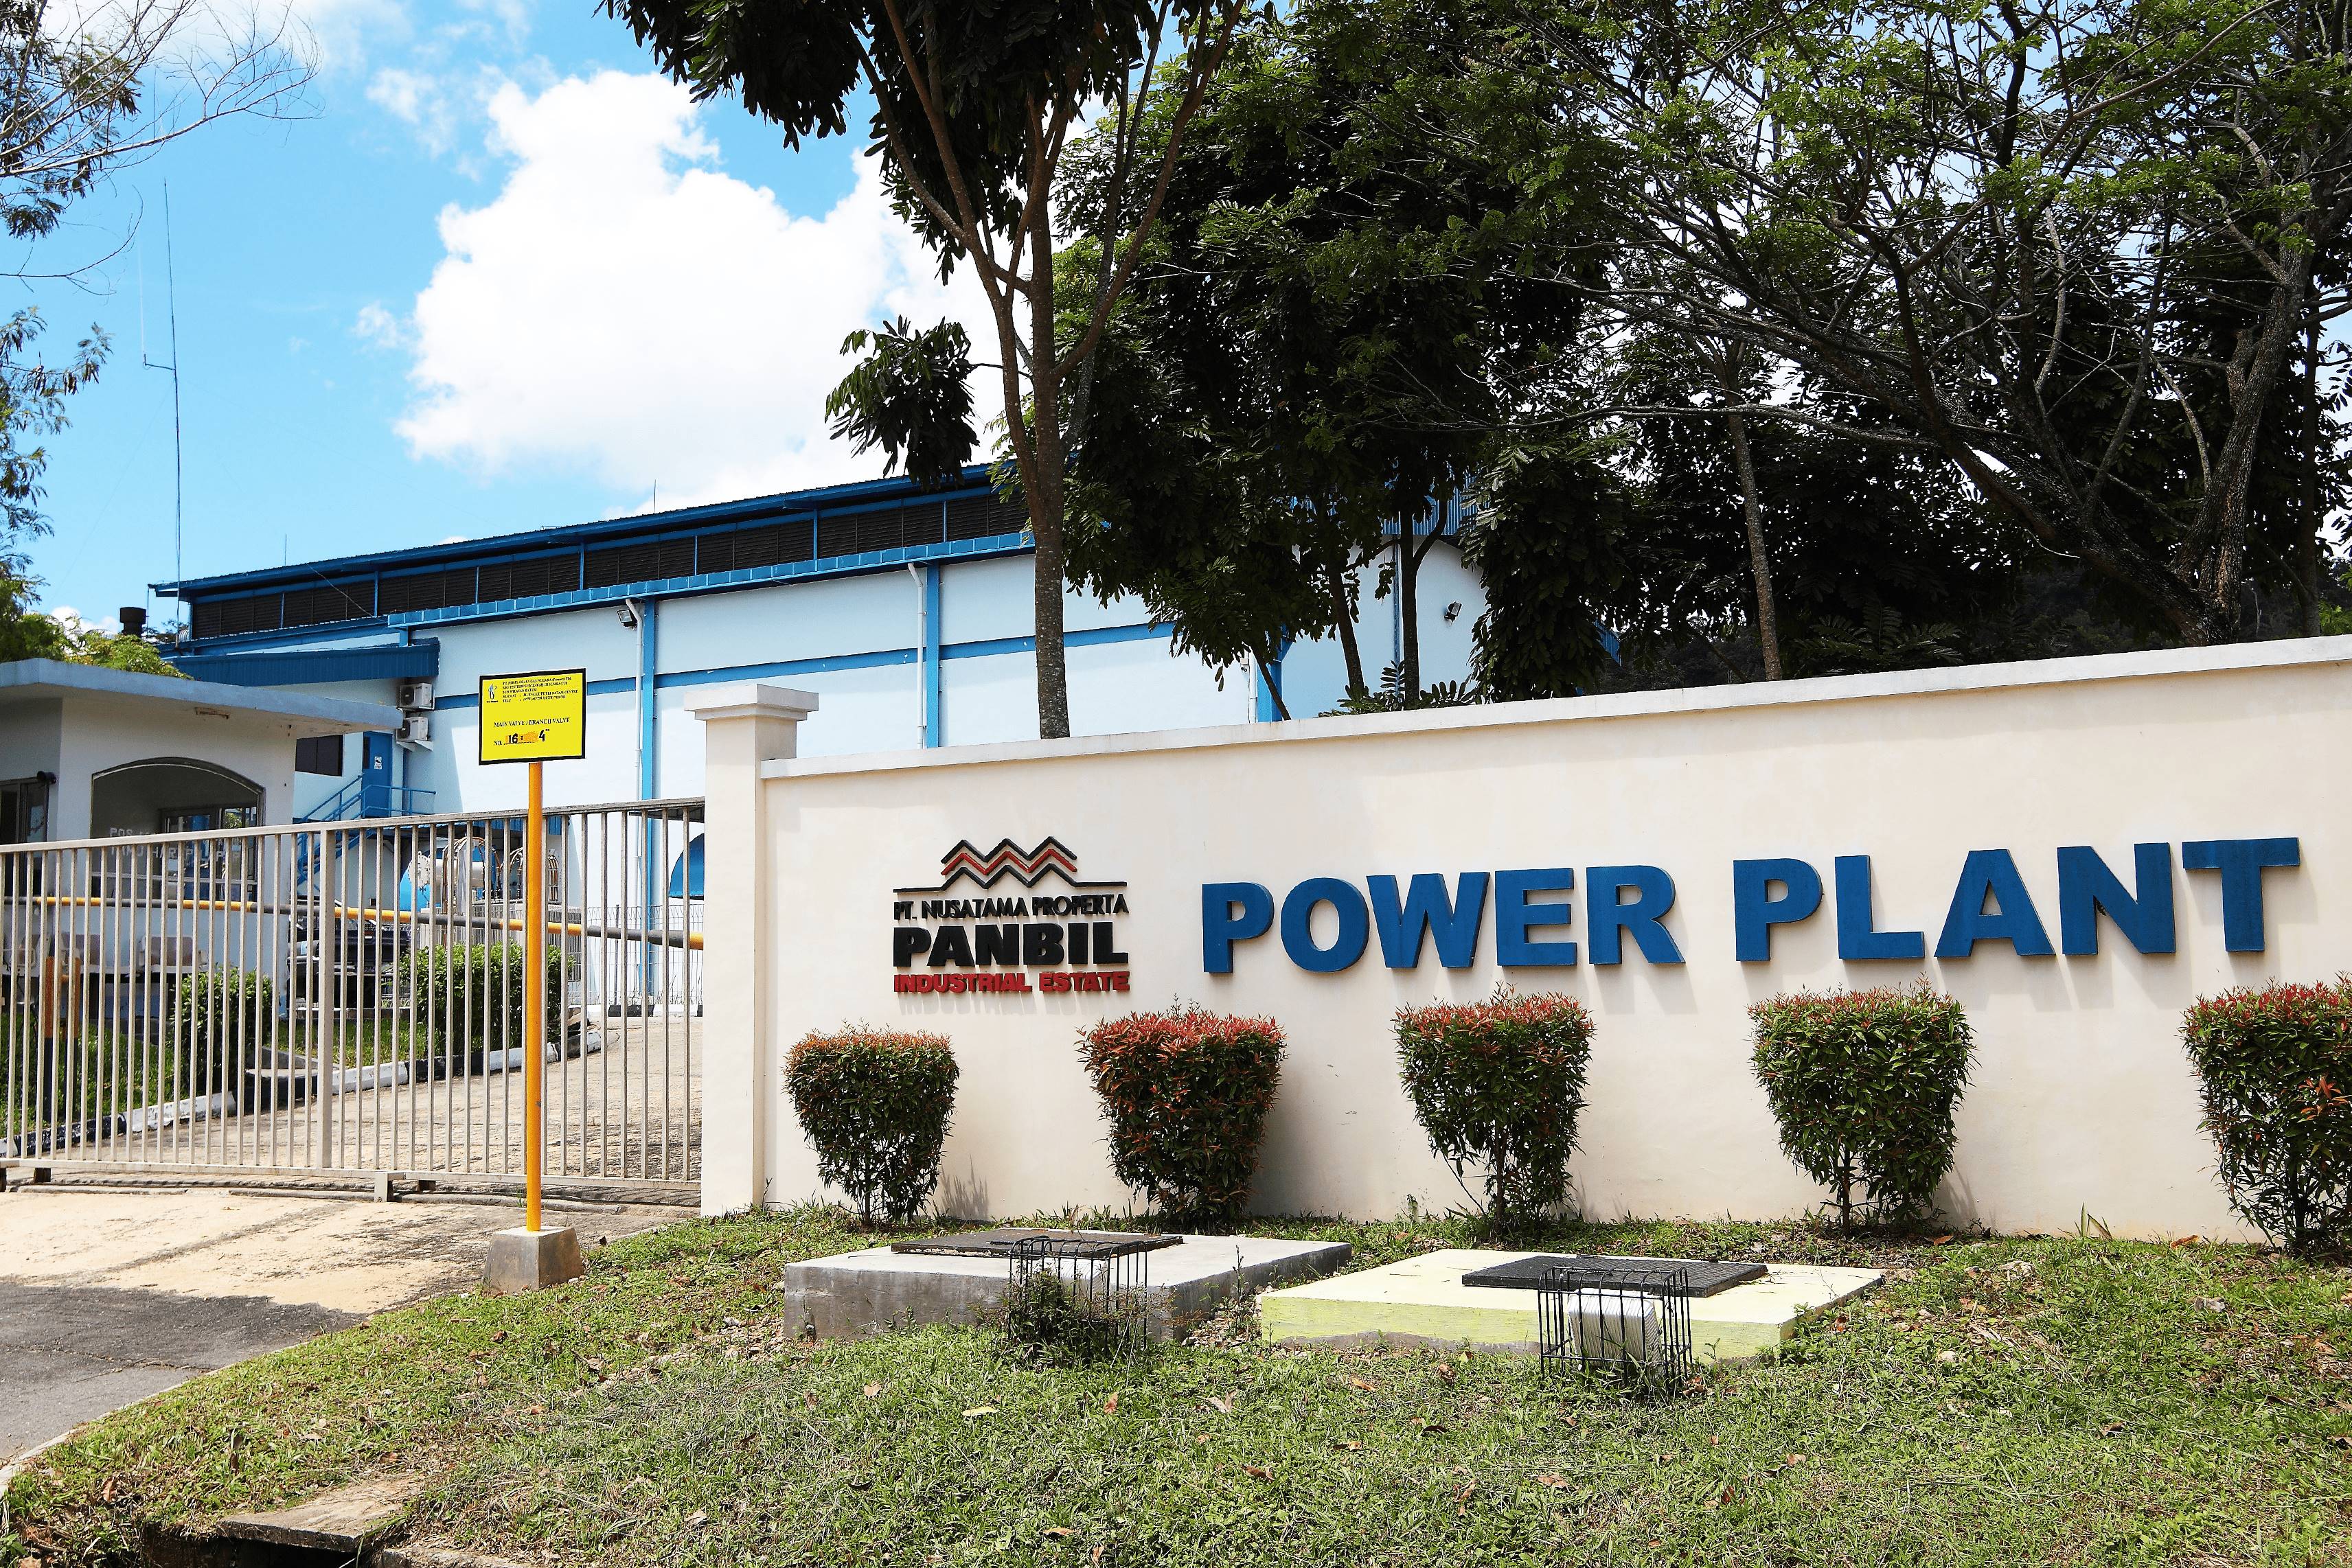 Power Plant Panbil – PT. Harapan Jaya Sentosa